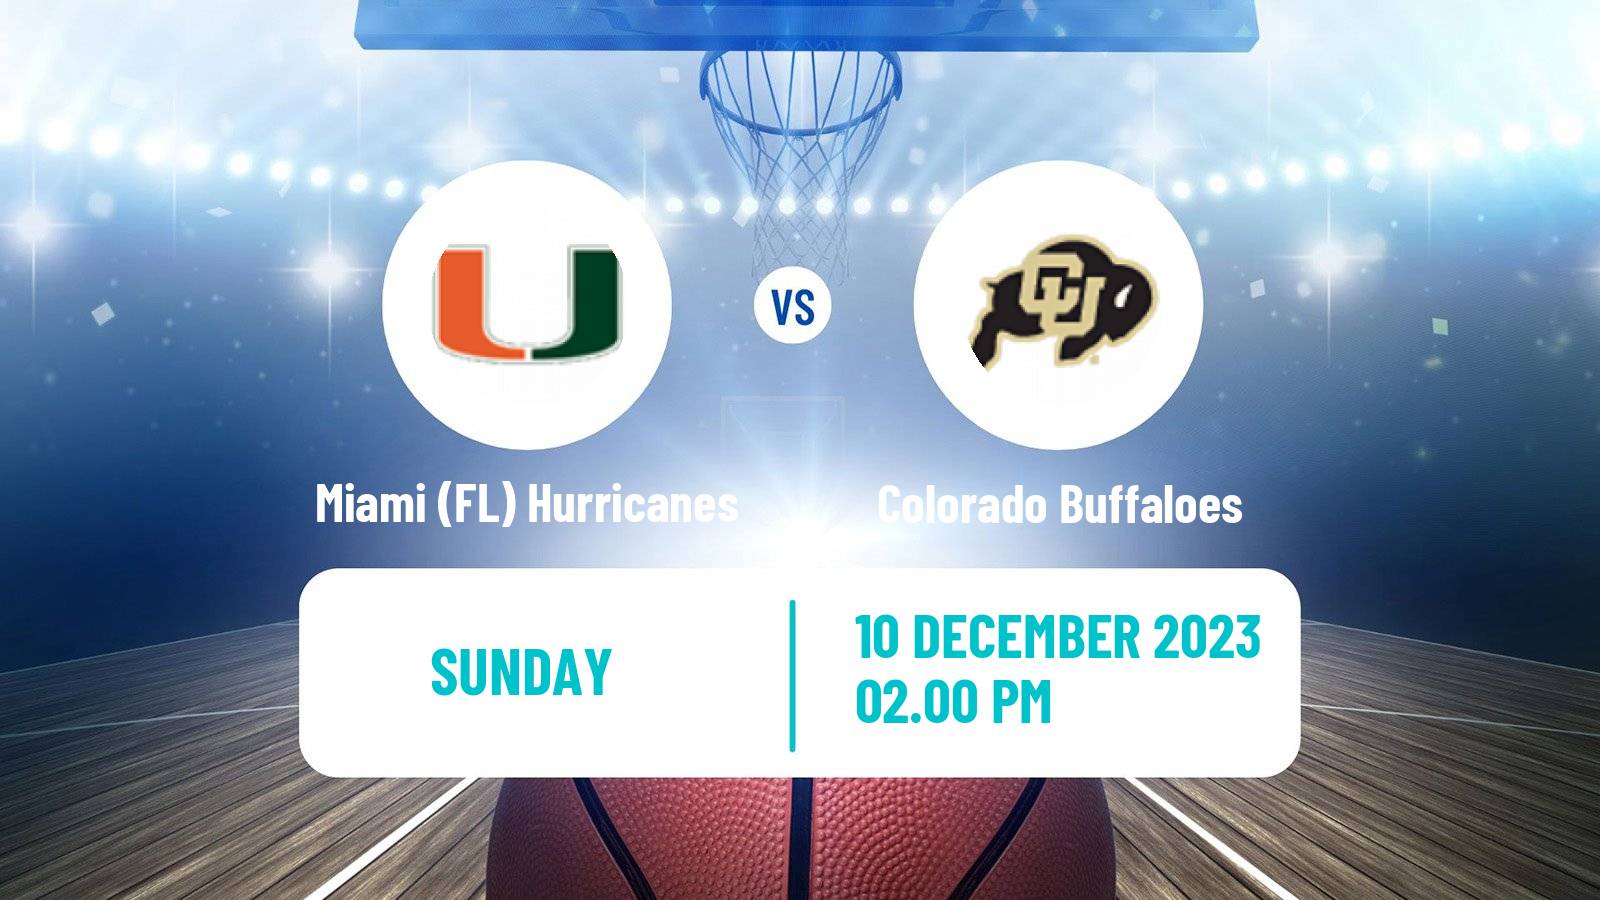 Basketball NCAA College Basketball Miami (FL) Hurricanes - Colorado Buffaloes